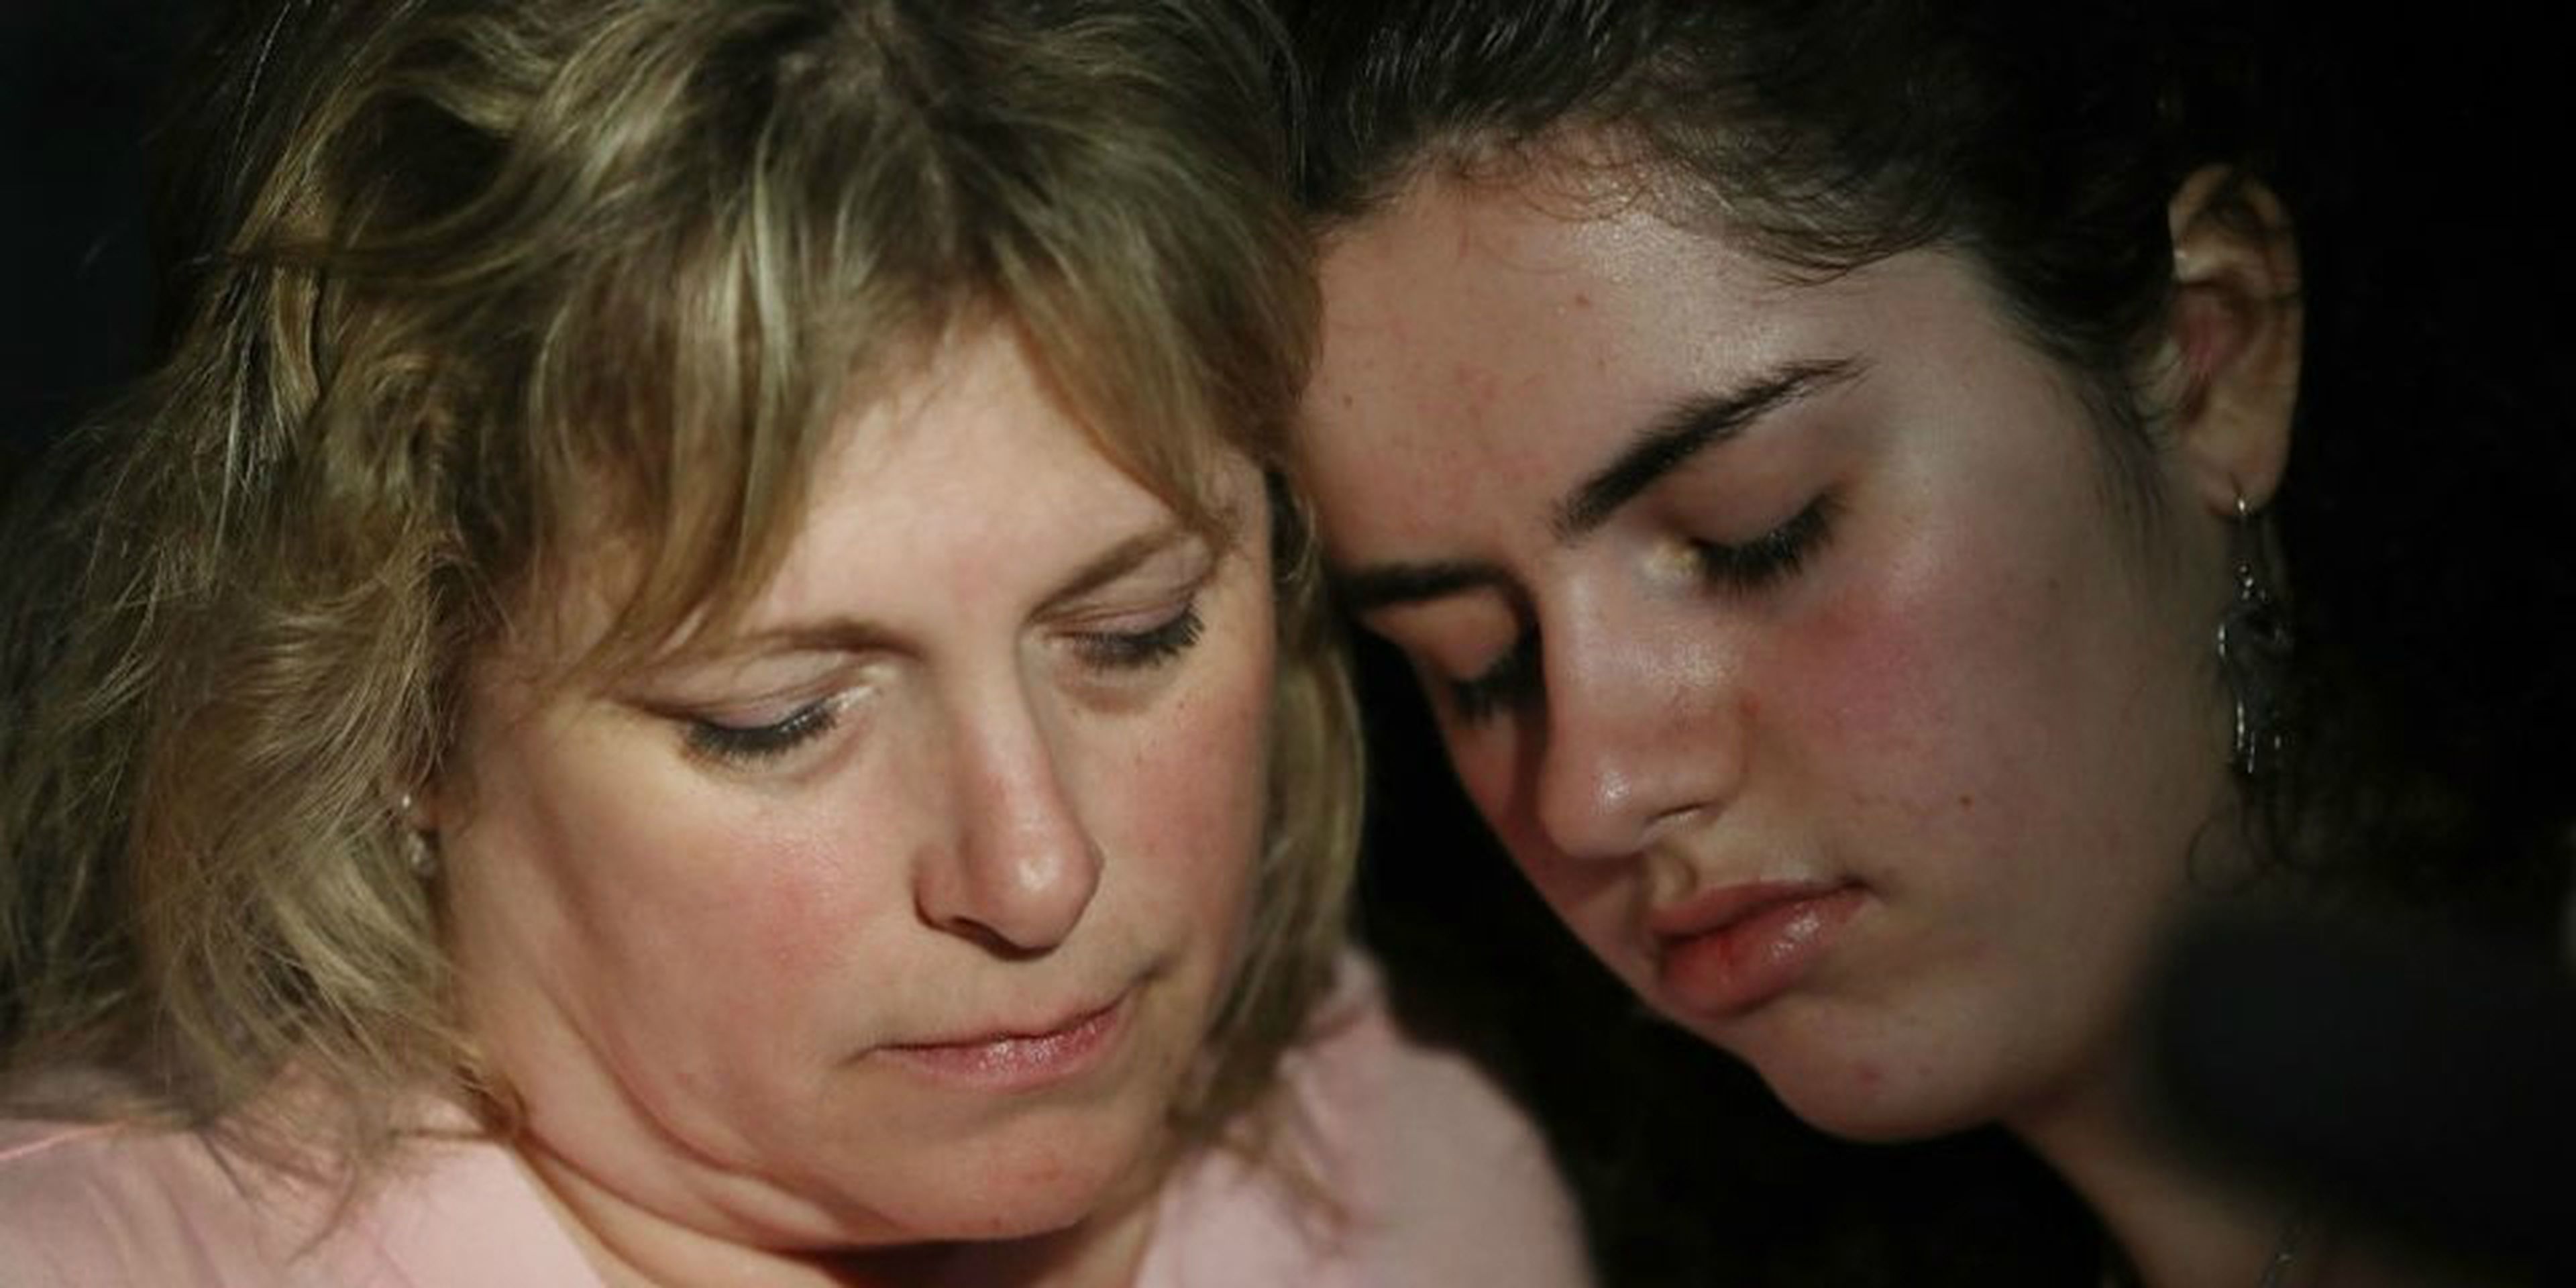 Sarah Crescitelli se apoya en su madre, Stacy Crescitelli (izqd.) tras escapar del tiroteo en la escuela secundaria Marjory Stoneman Douglas en el que murieron 17 personas el 14 de febrero de 2018 en Parkland, Florida (EE. UU.).